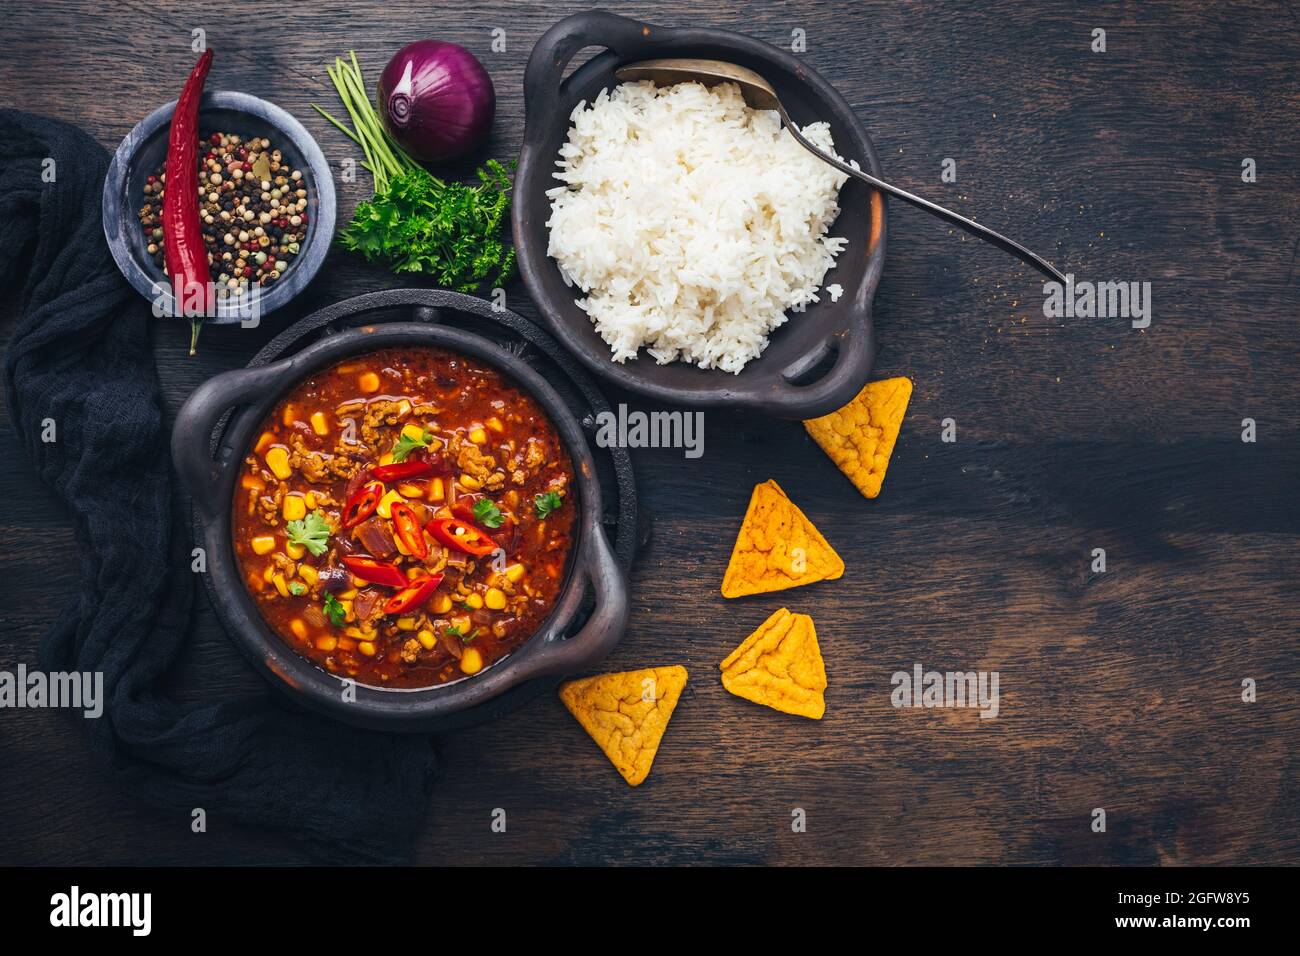 Bol de Chili con carne avec riz et garnitures sur table en bois Banque D'Images